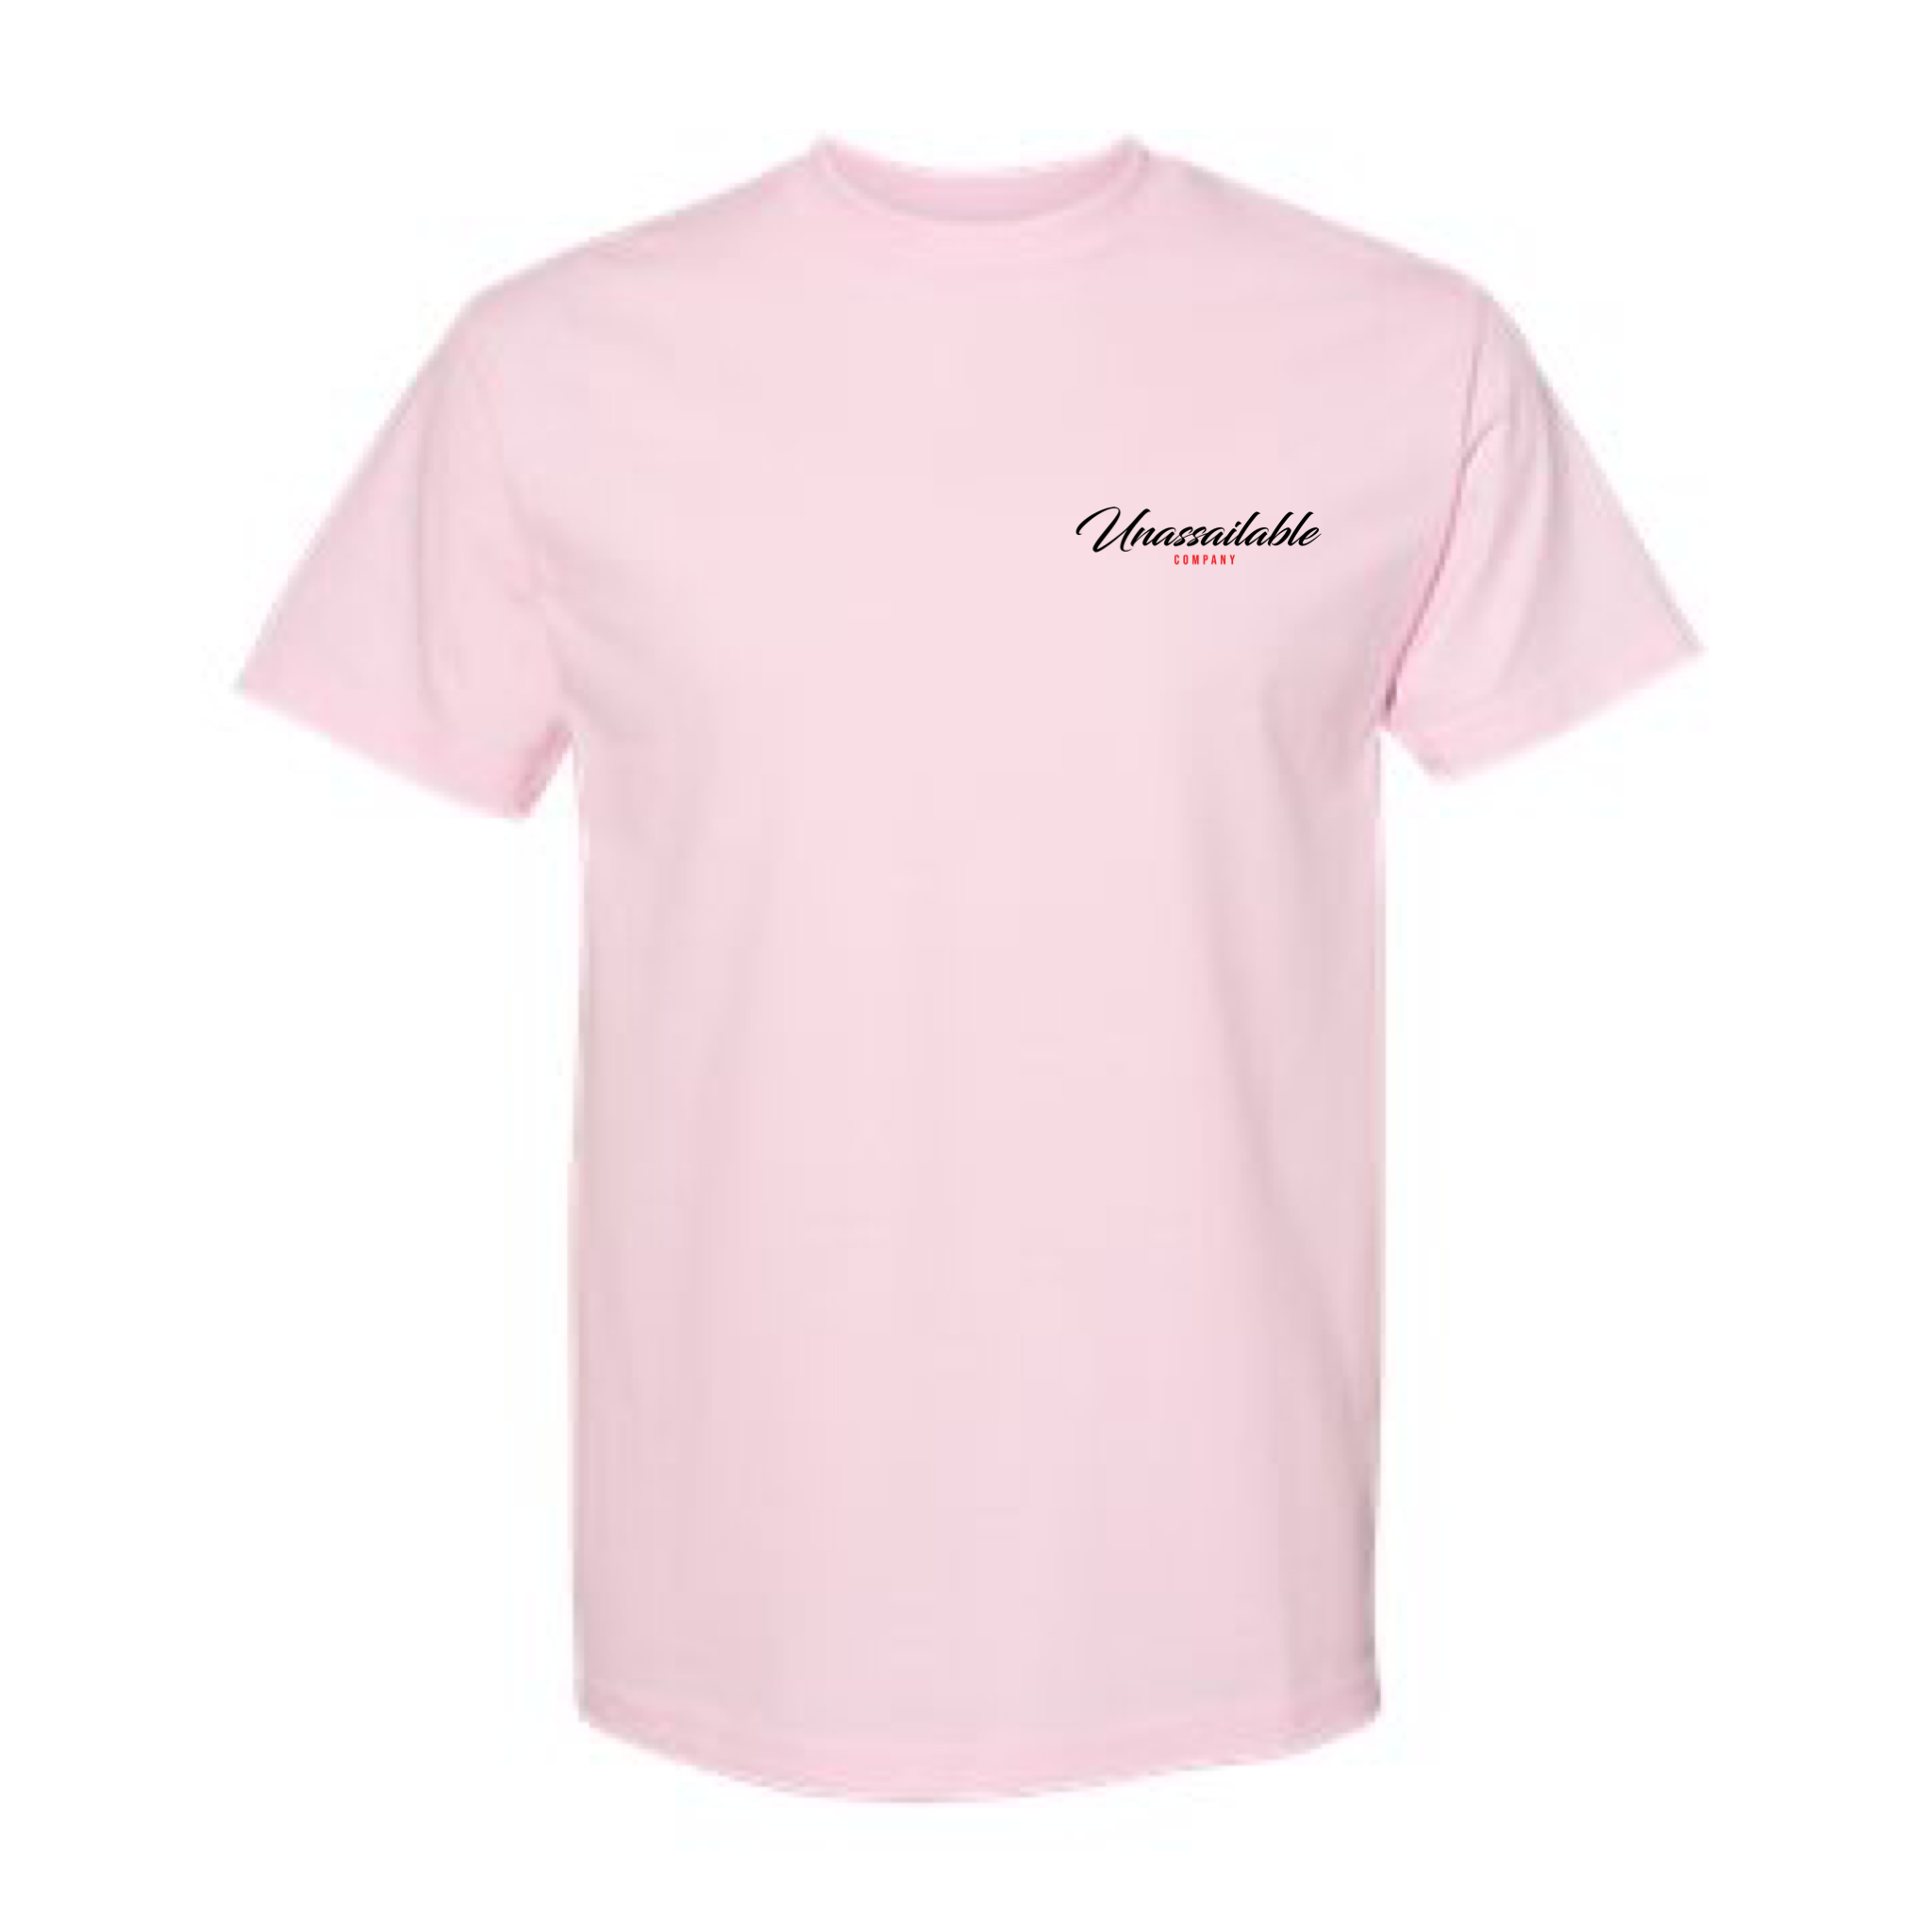 Agape Love (God's Love) Pink T-Shirt